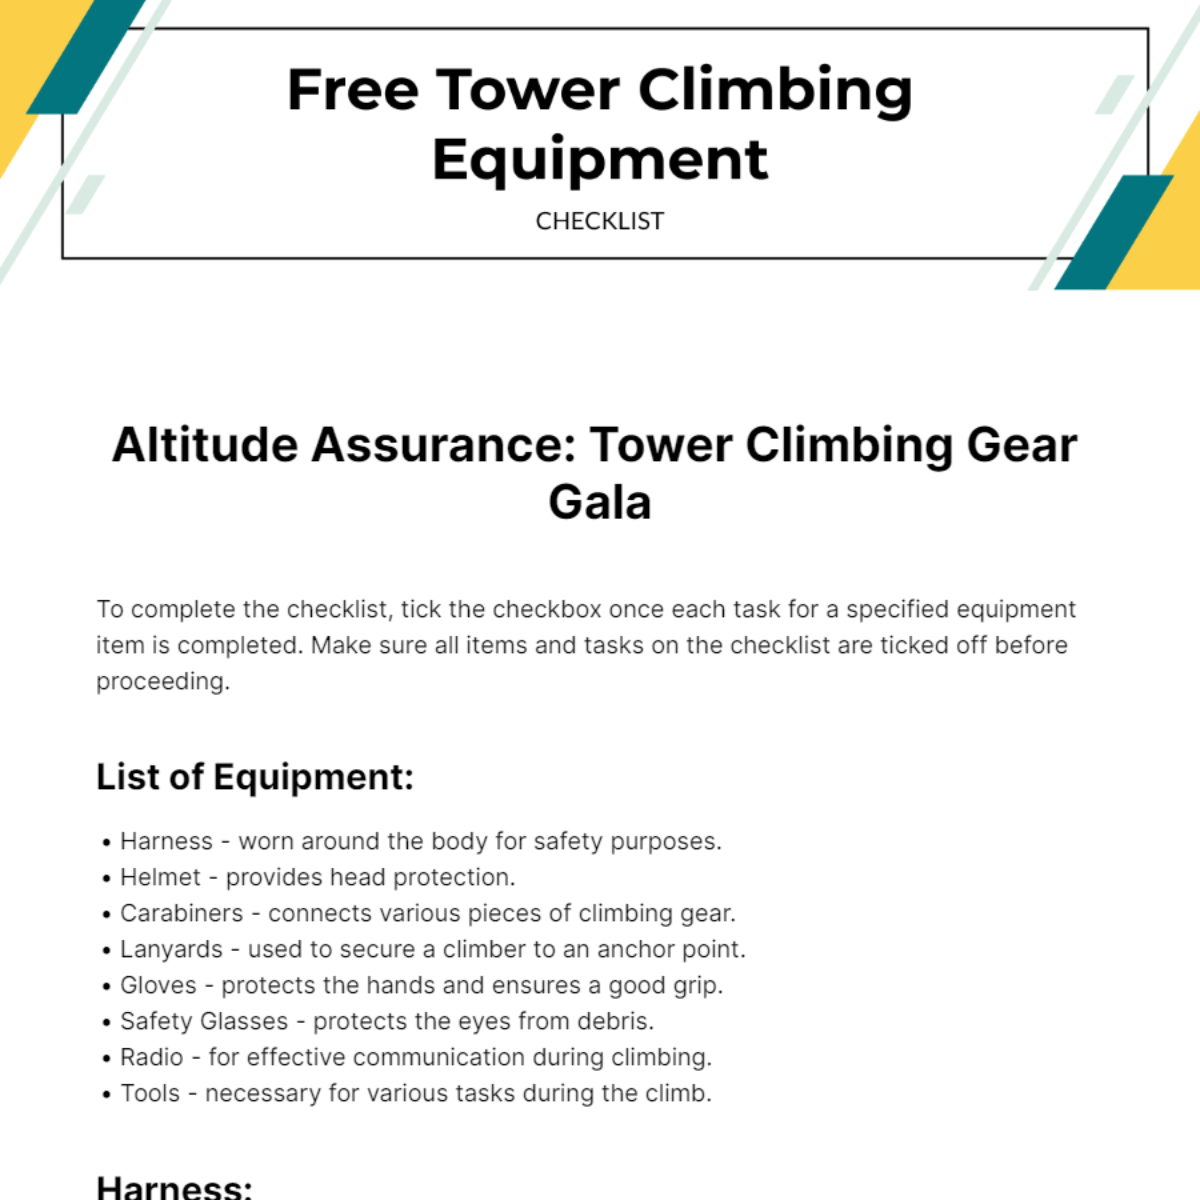 Tower Climbing Equipment Checklist Template